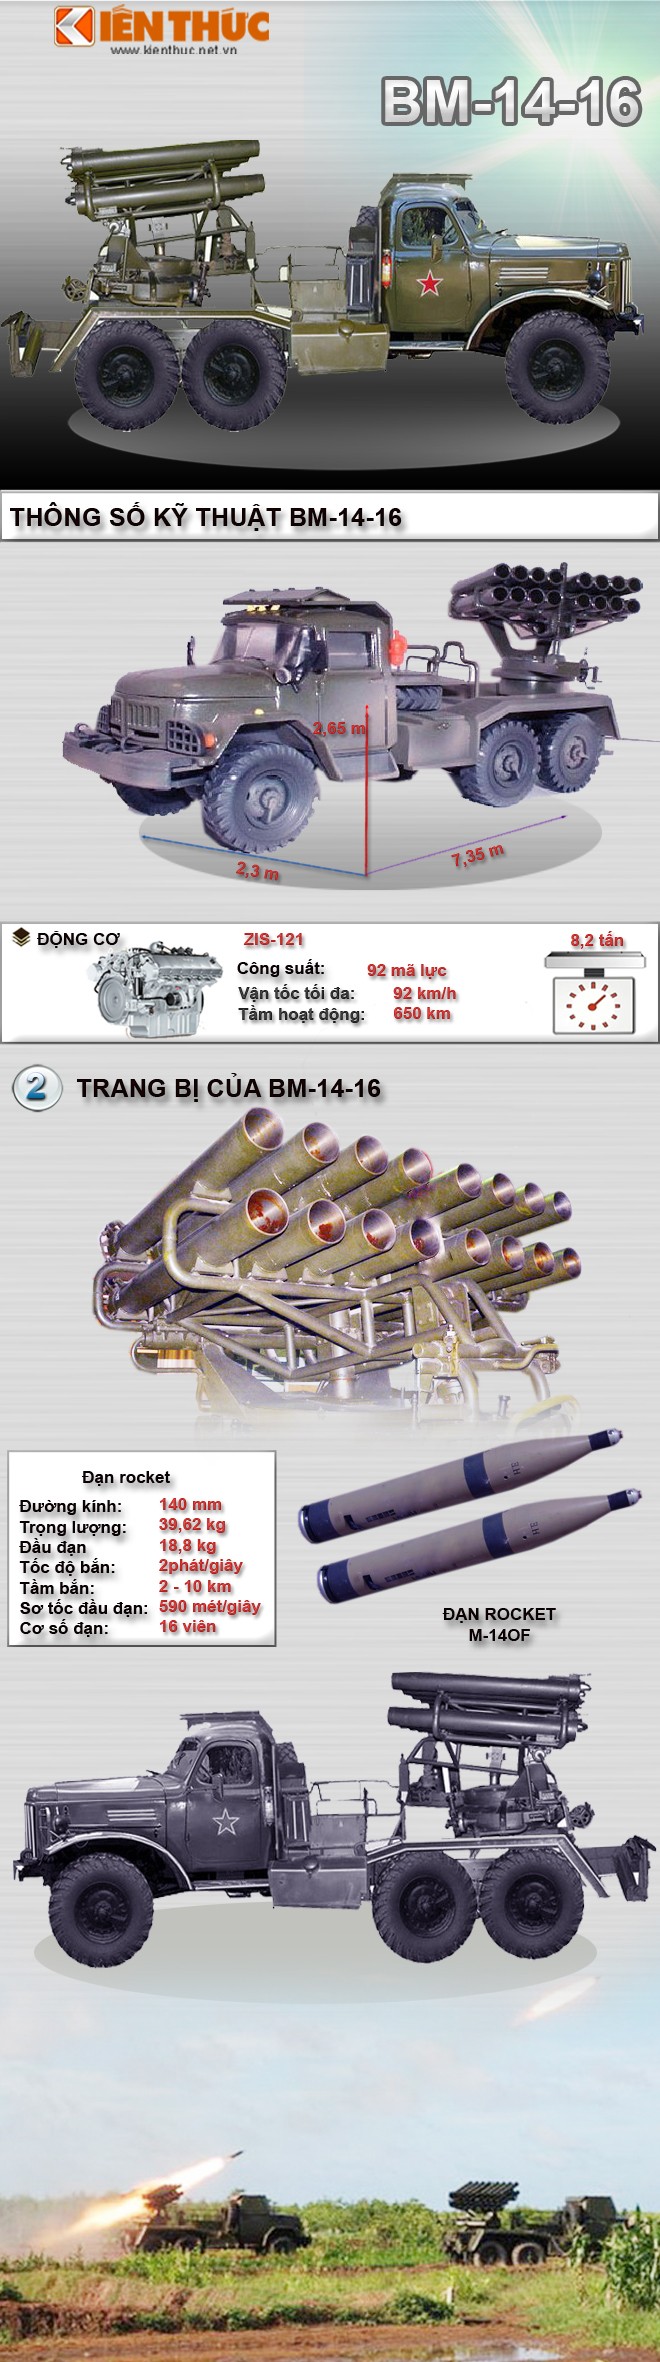 Infographic: Phao phan luc BM-14-16 phong thu bo bien Viet Nam